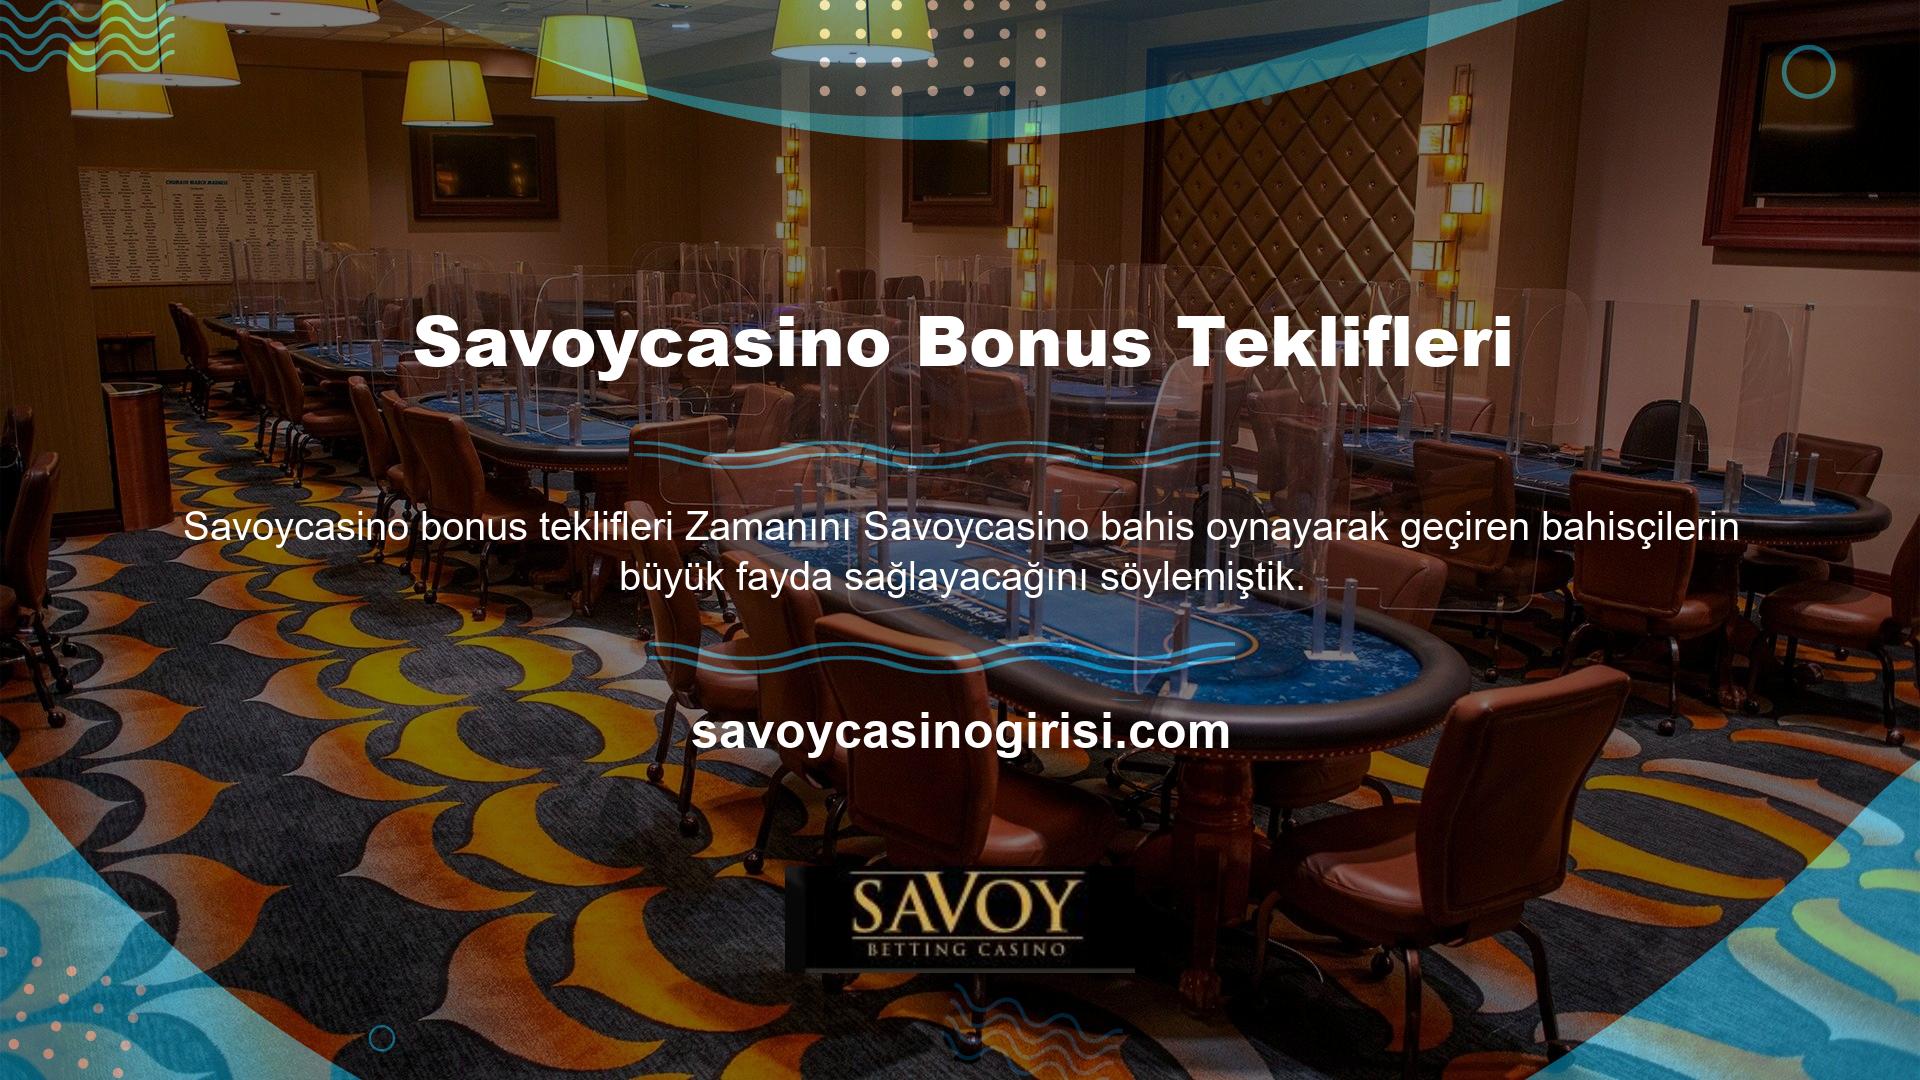 Diğer web sitelerinin aksine Savoycasino web sitesi kullanıcılarına bonuslar sunmaktadır